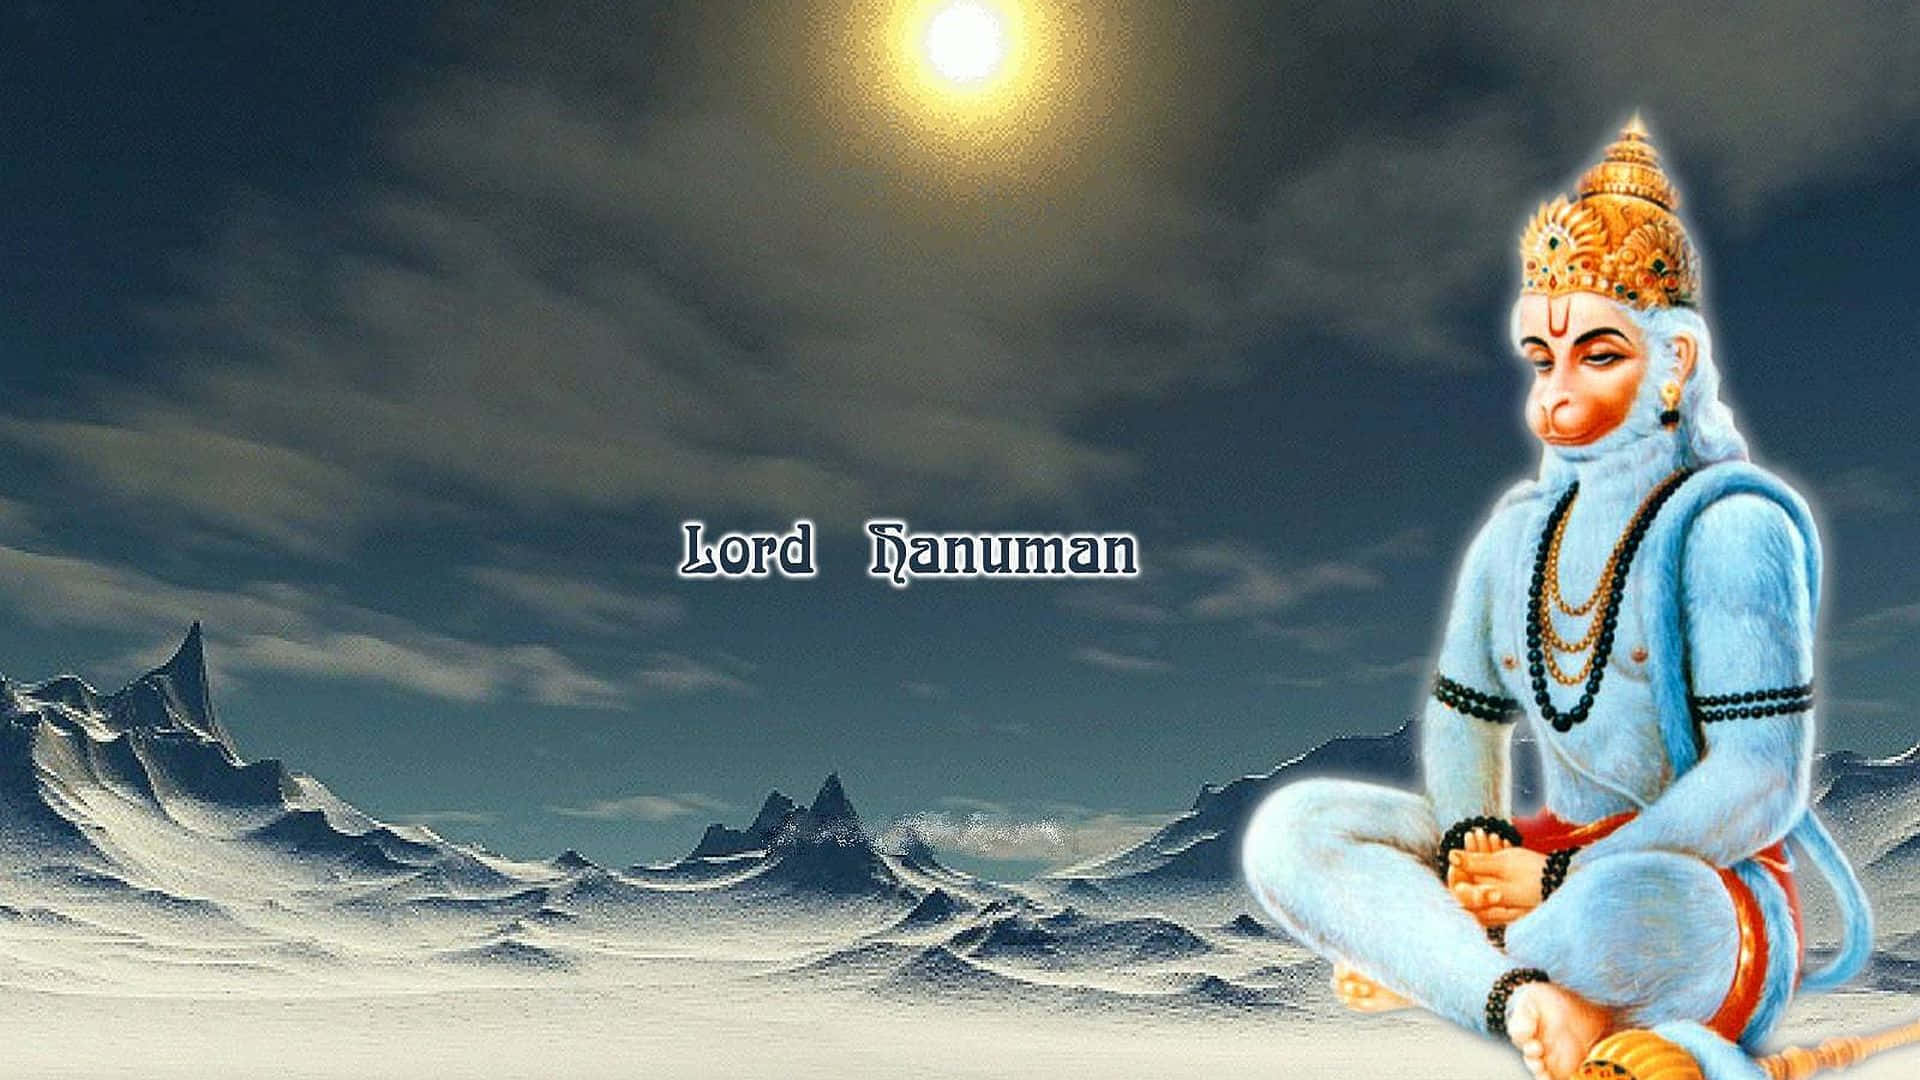 Divine Hanuman Amidst Snowy Peaks